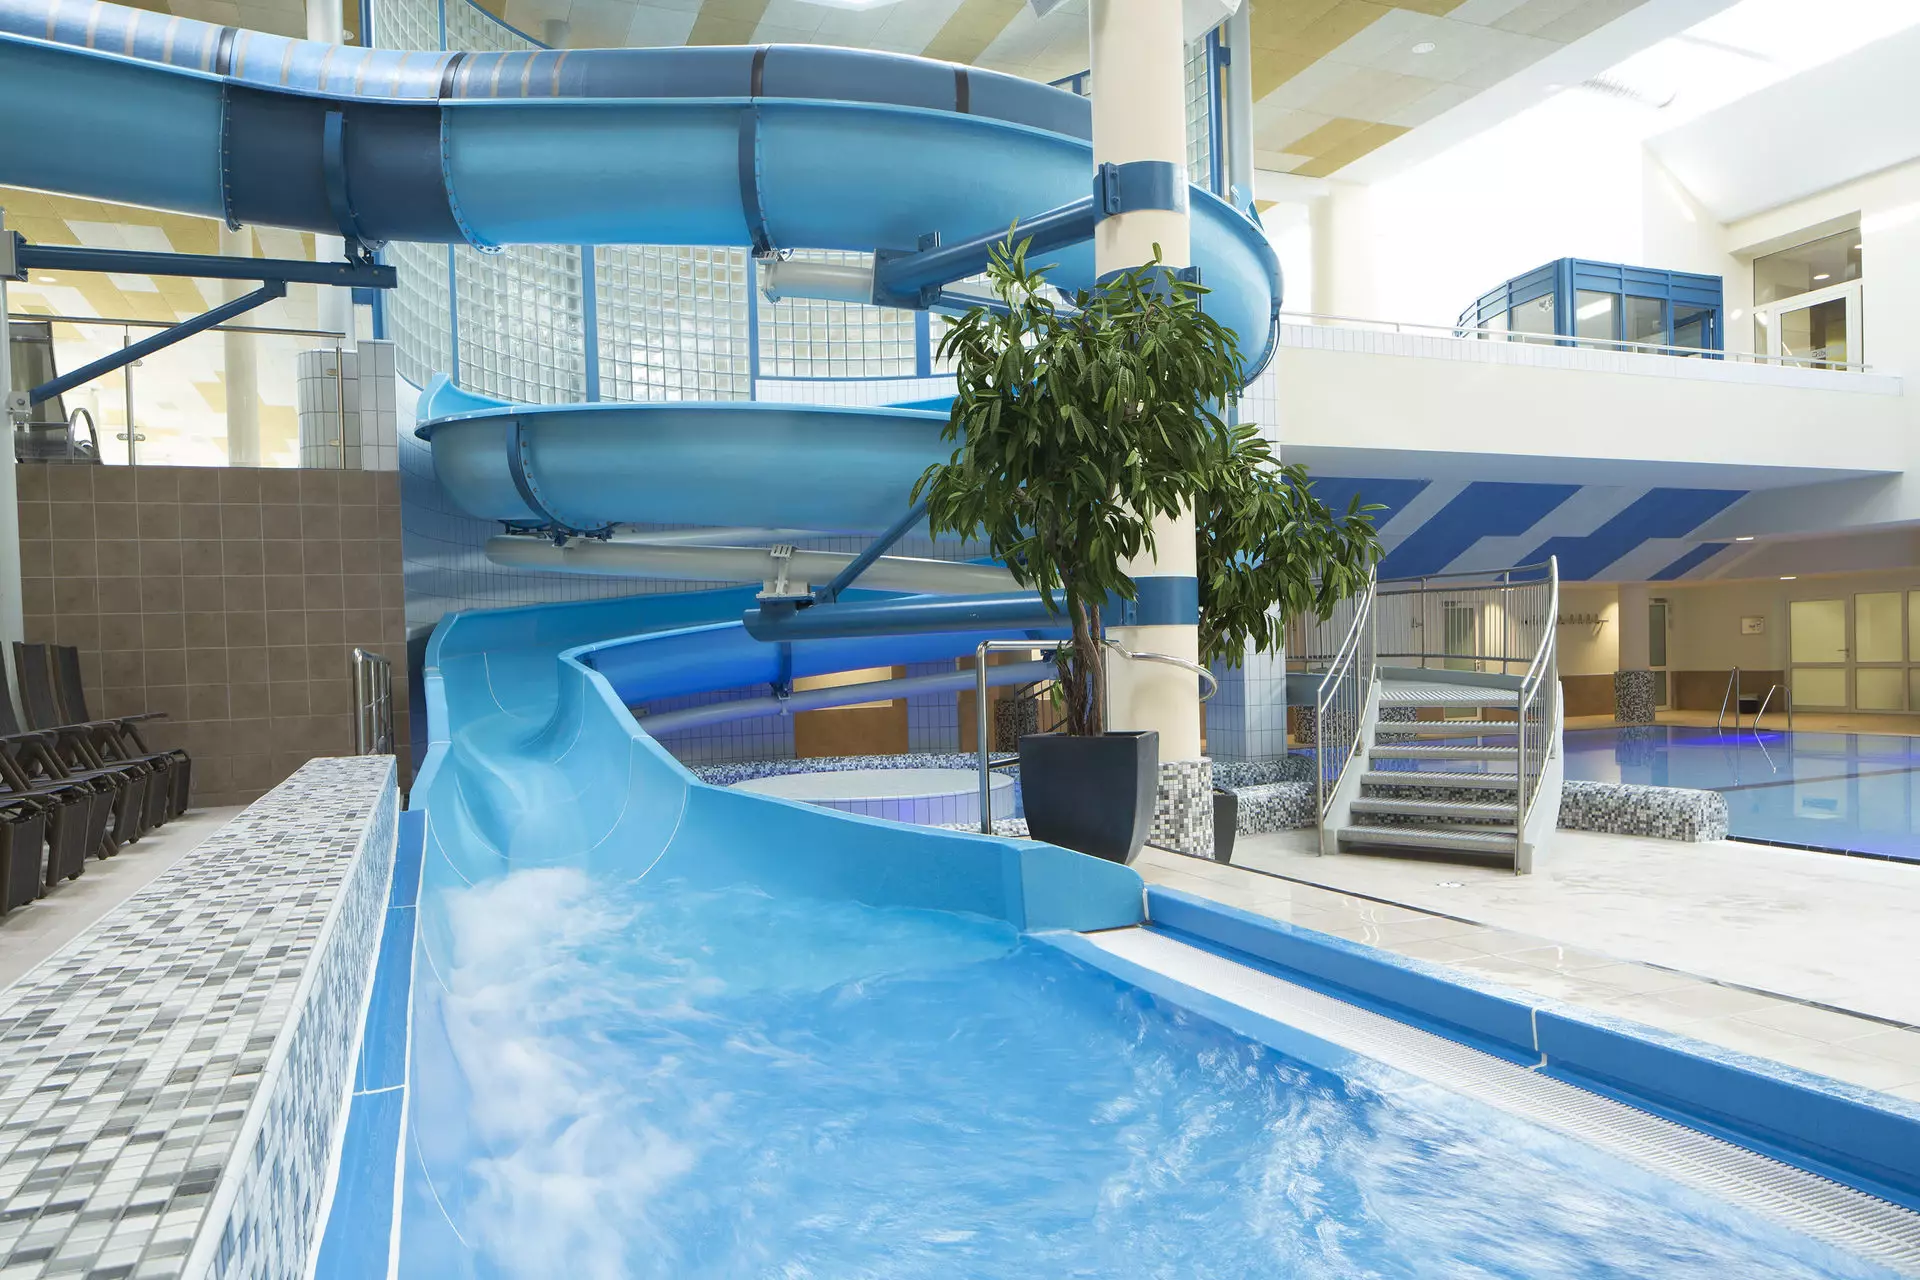 Endbereich einer blauen Wasserrutsche vor einer kleinen Treppe und einer grünen Pflanze im Innenraum eines Schwimmbads. Im Hintergrund ist die Röhrenrutsche zu mit zwei Kurven zu erkennen.